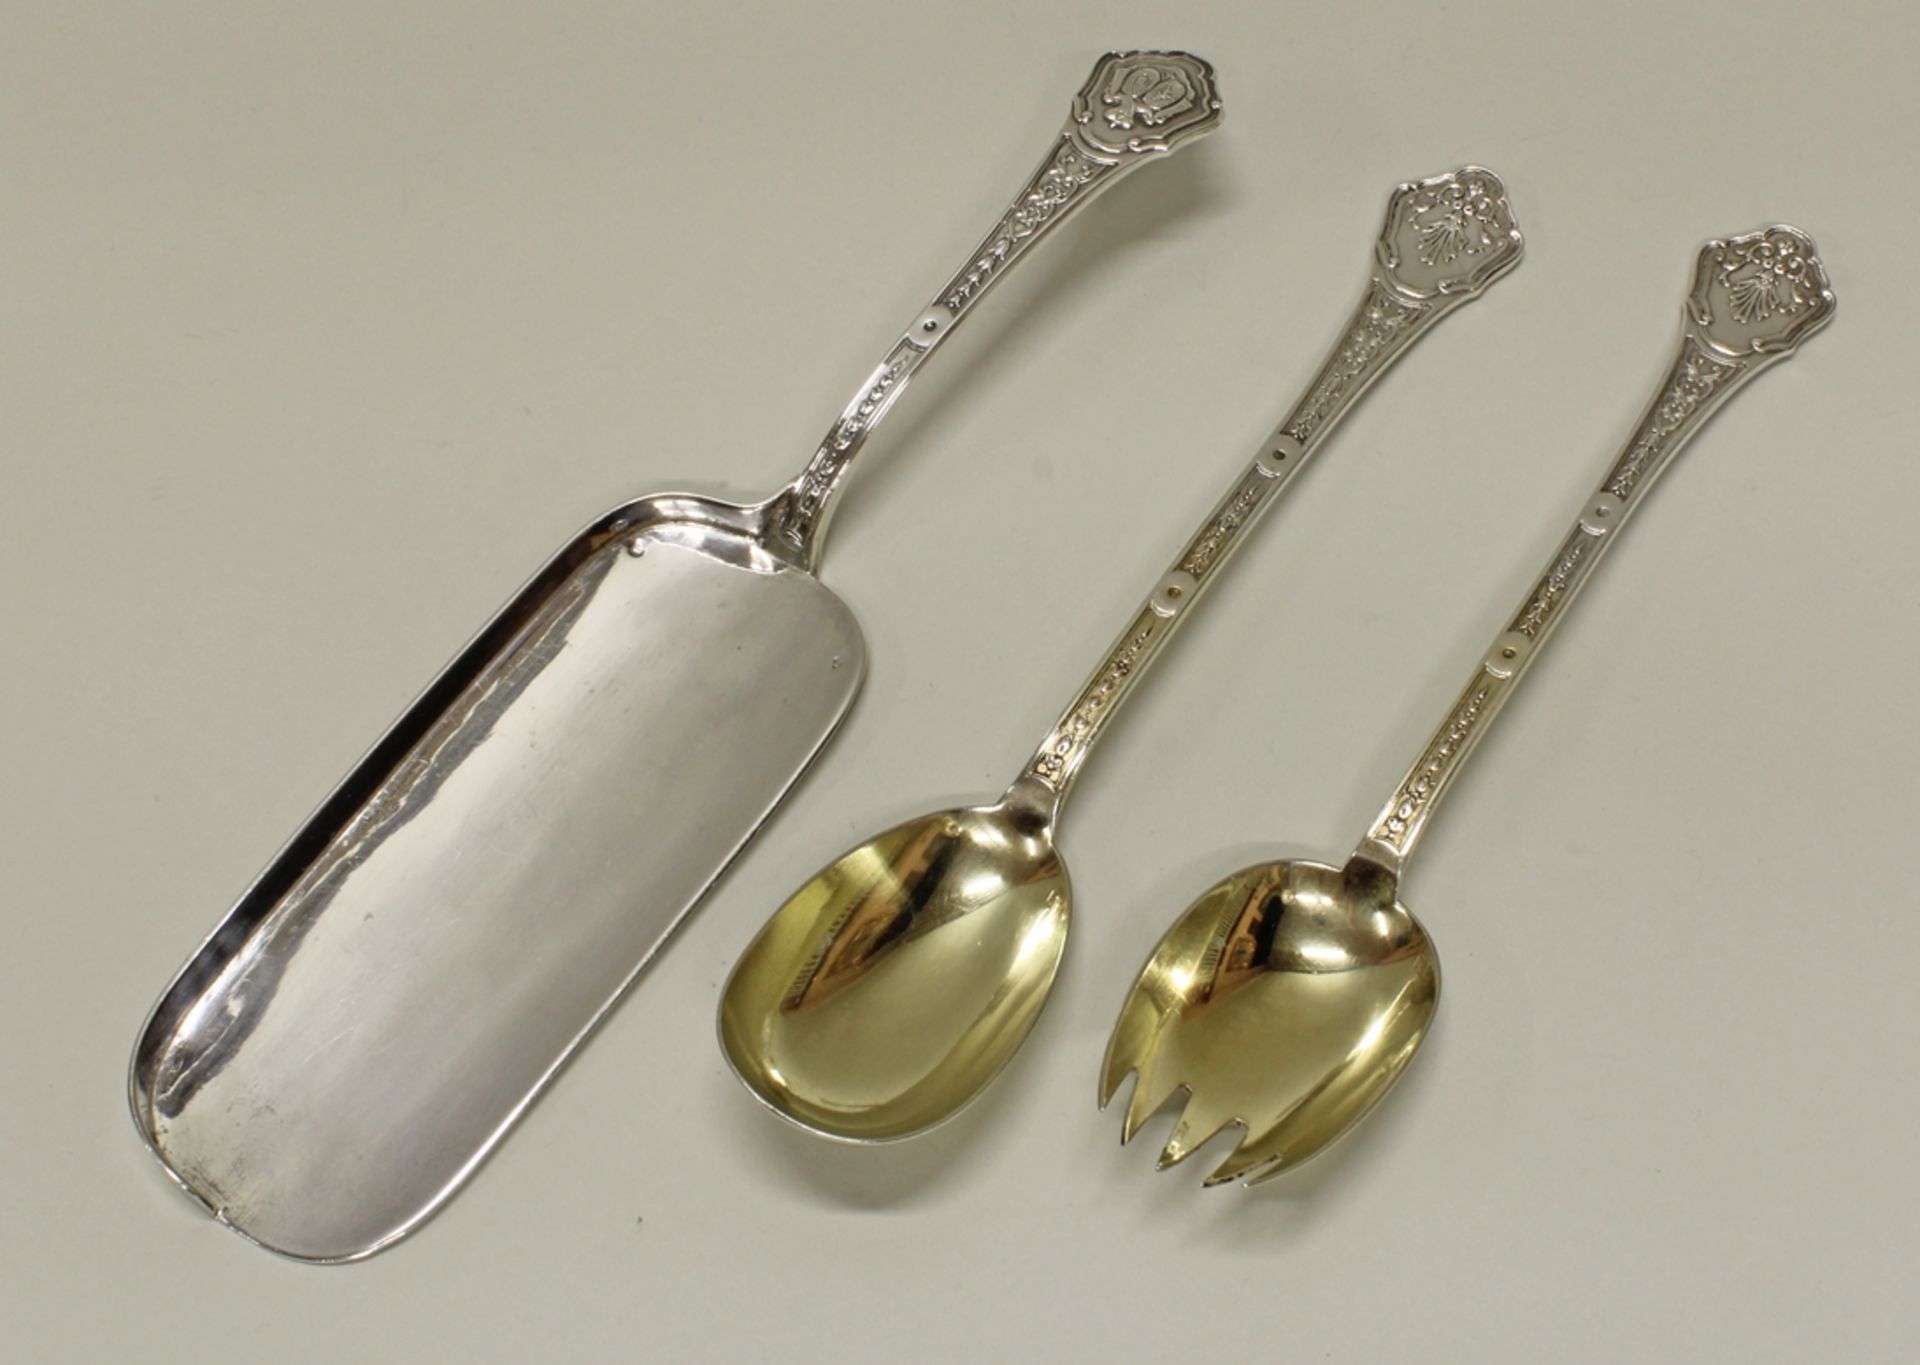 Salatbesteck, Tischschaufel, Silber 950, Paris, André Aucoc, Griffe mit Doppelwappen, teils vergold